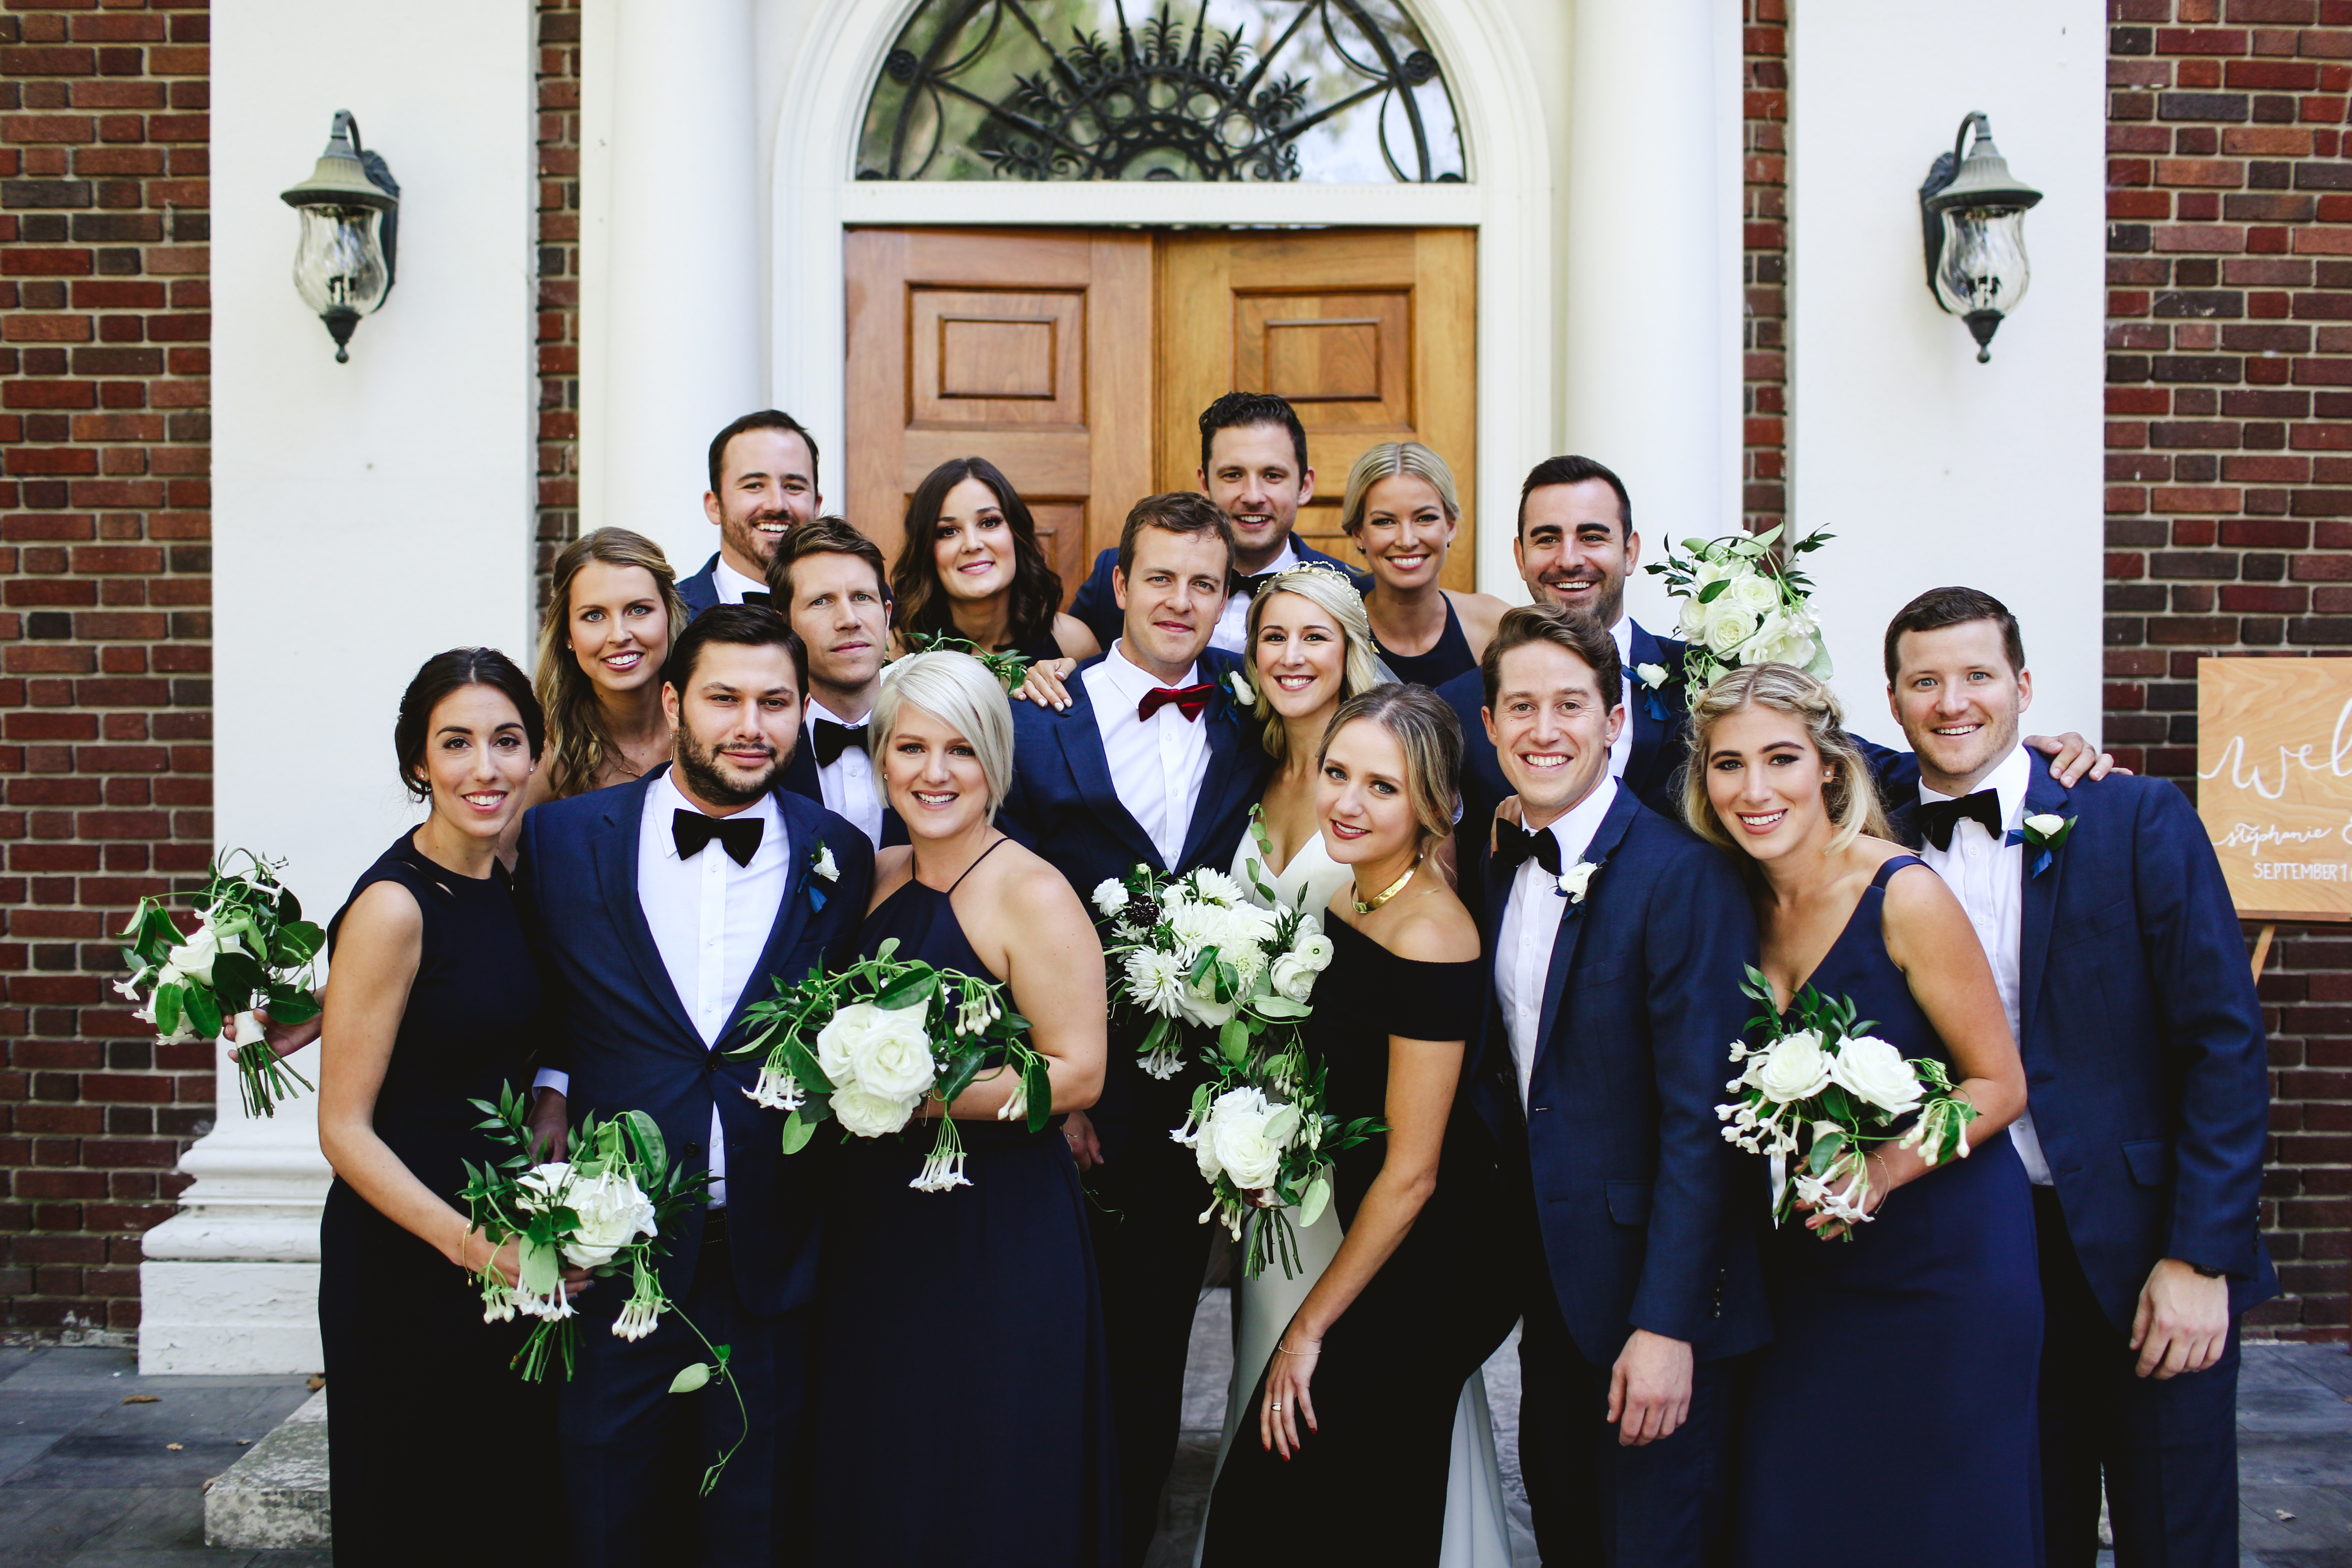 The whole wedding party - Mansion Wedding - Amanda Douglas Events